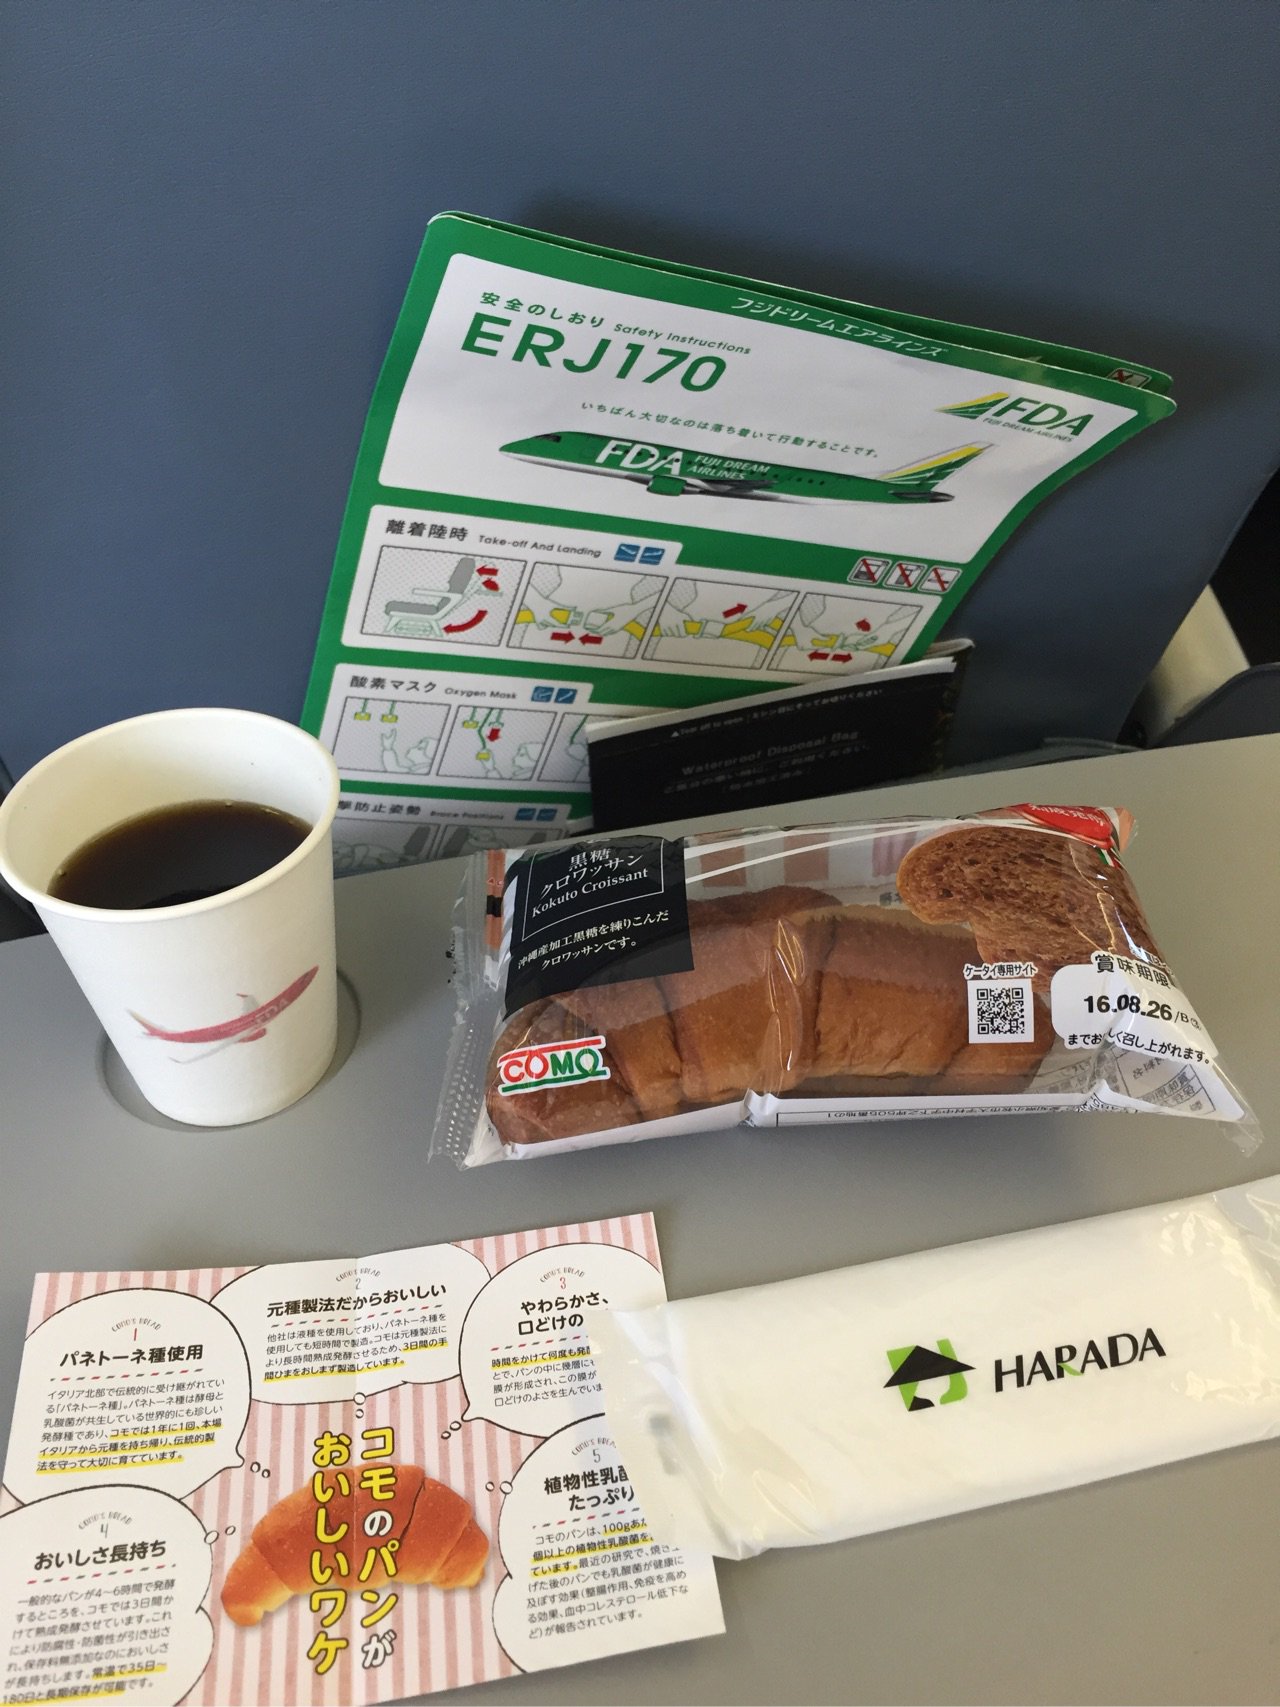 FDAでは機内食は出ないものかと思ってたけど、朝だからか小牧のcomoパンと飲み物をもらえた。 https://t.co/sEsytrbkYM